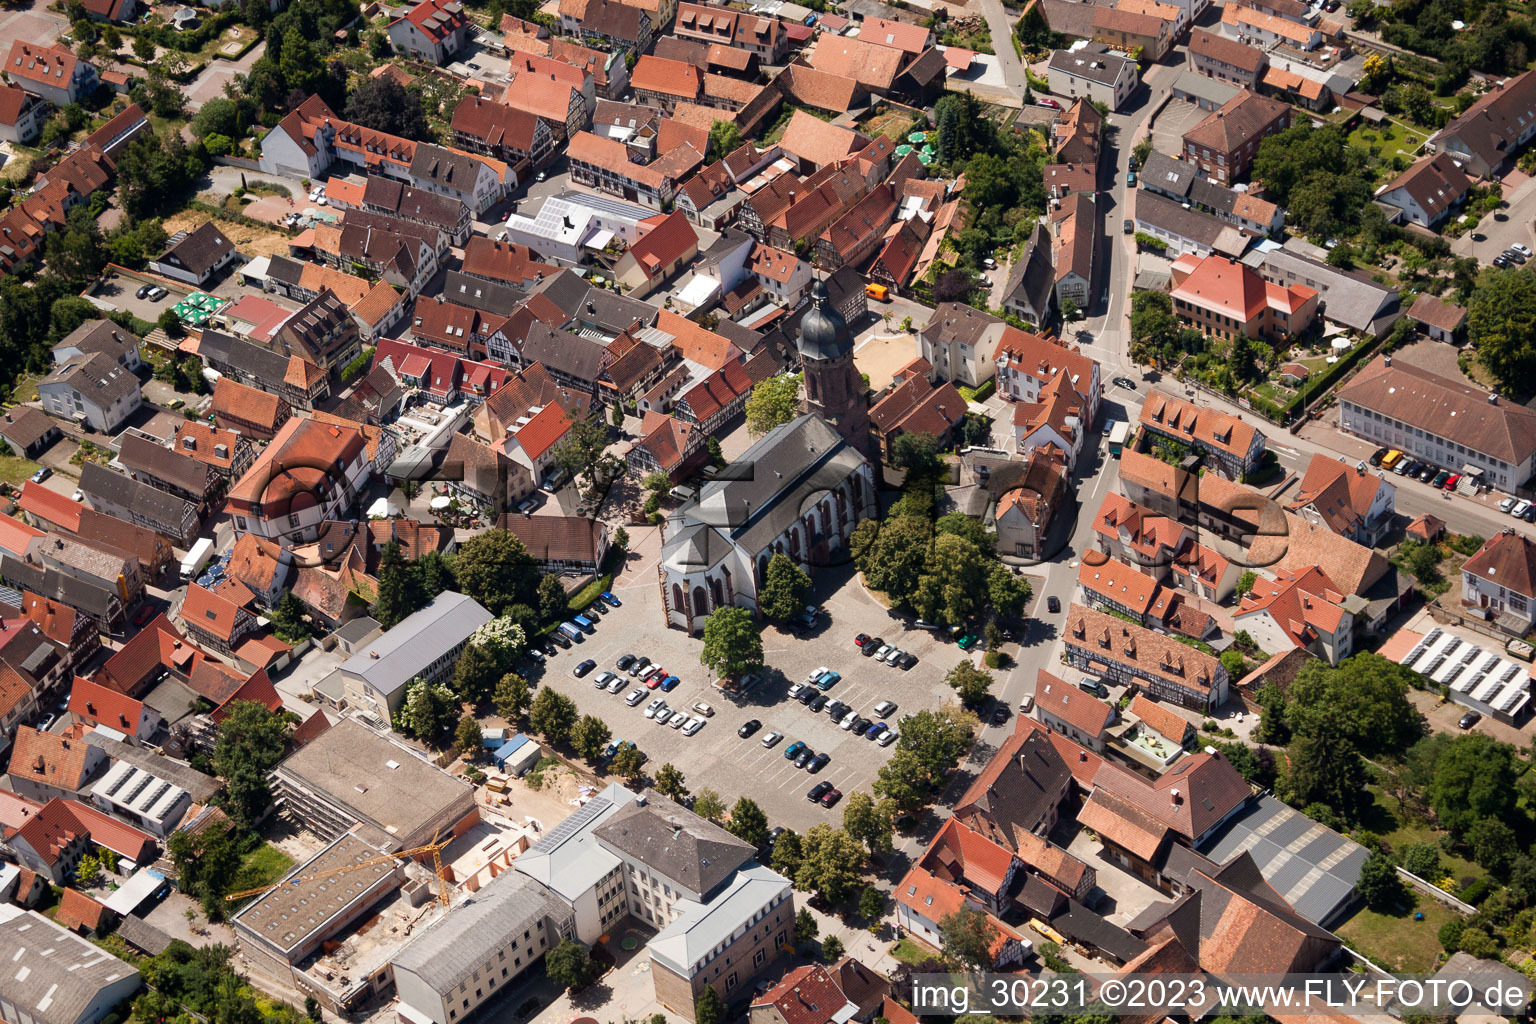 Vue aérienne de Kandel dans le département Rhénanie-Palatinat, Allemagne